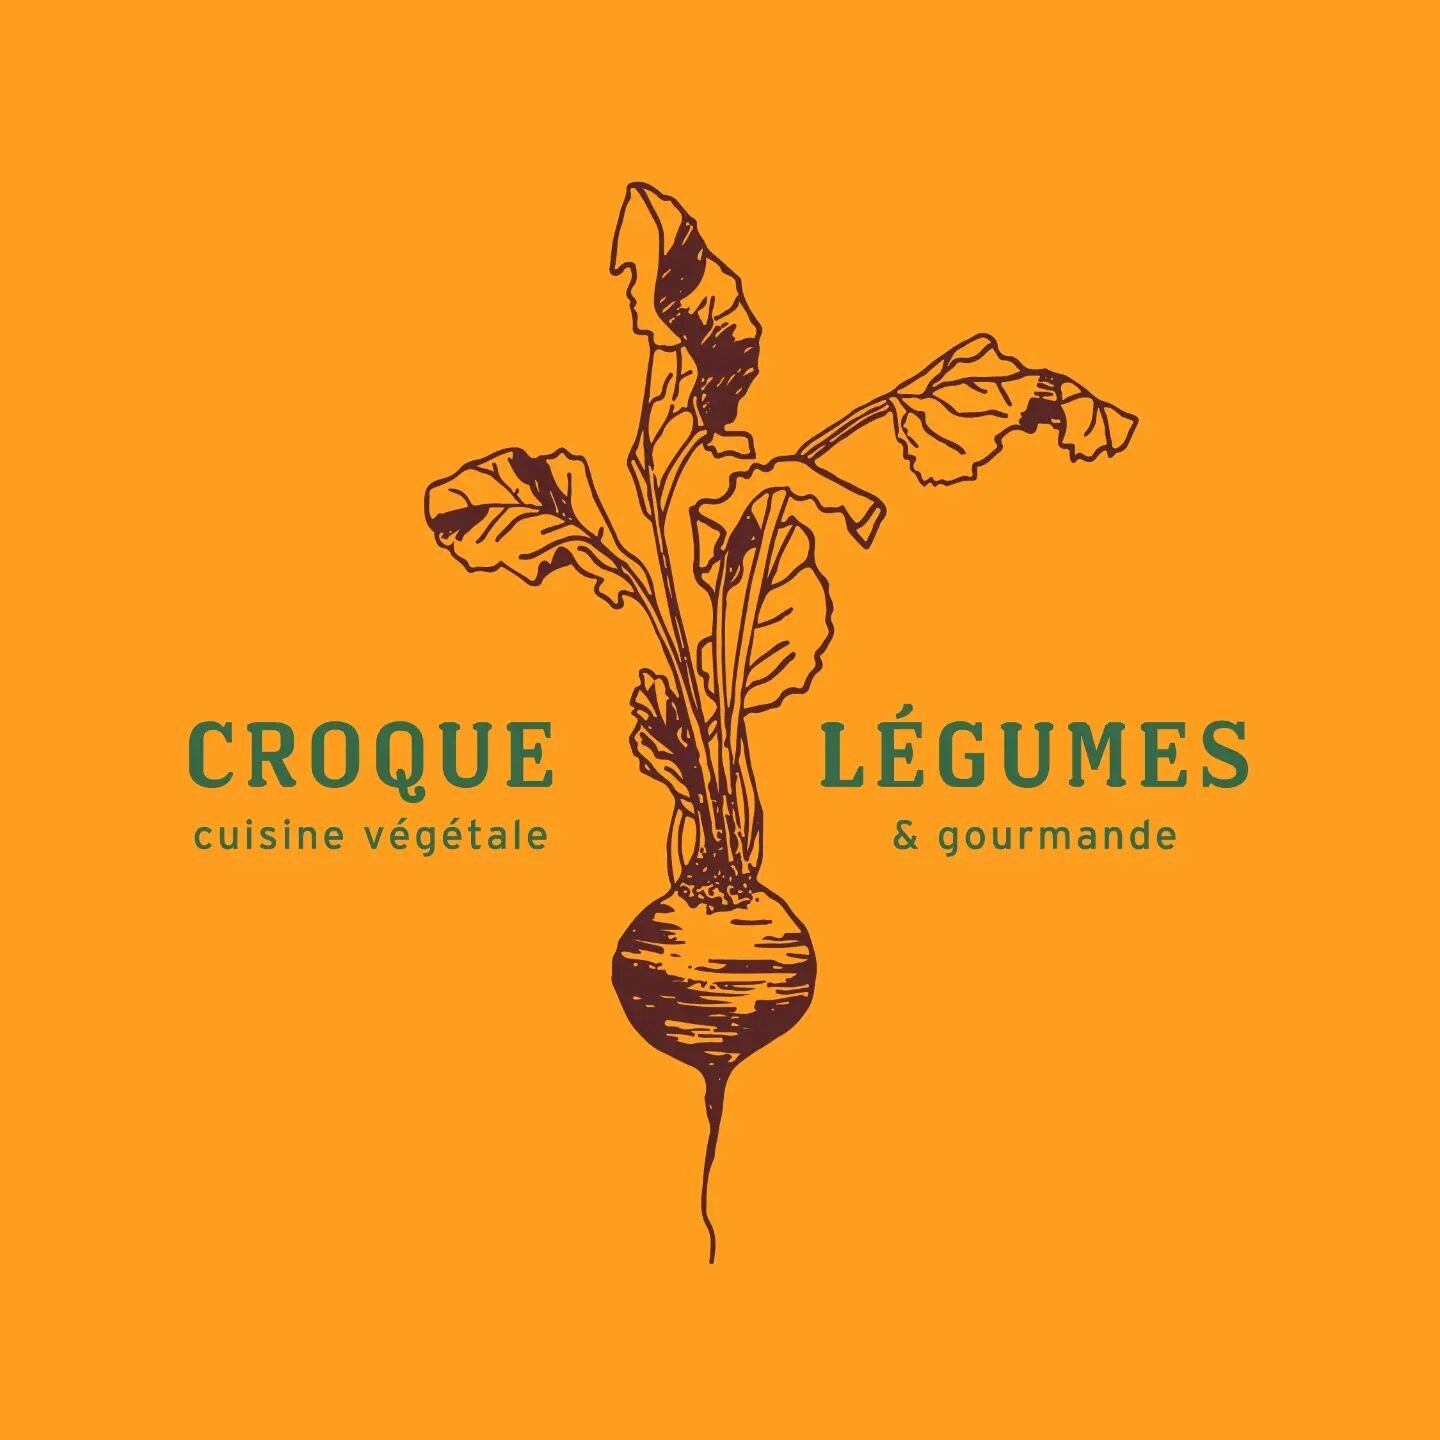 Une identit&eacute; pour @croquelegumes 👩🏻&zwj;🍳

Cuisine v&eacute;g&eacute;tale et gourmande &eacute;labor&eacute;e avec 🧡 par Sierra, &agrave; Lyon. Merci &agrave; toi, j'ai ador&eacute; faire ce logo !

#identitevisuelle #logo  #graphiste #cui